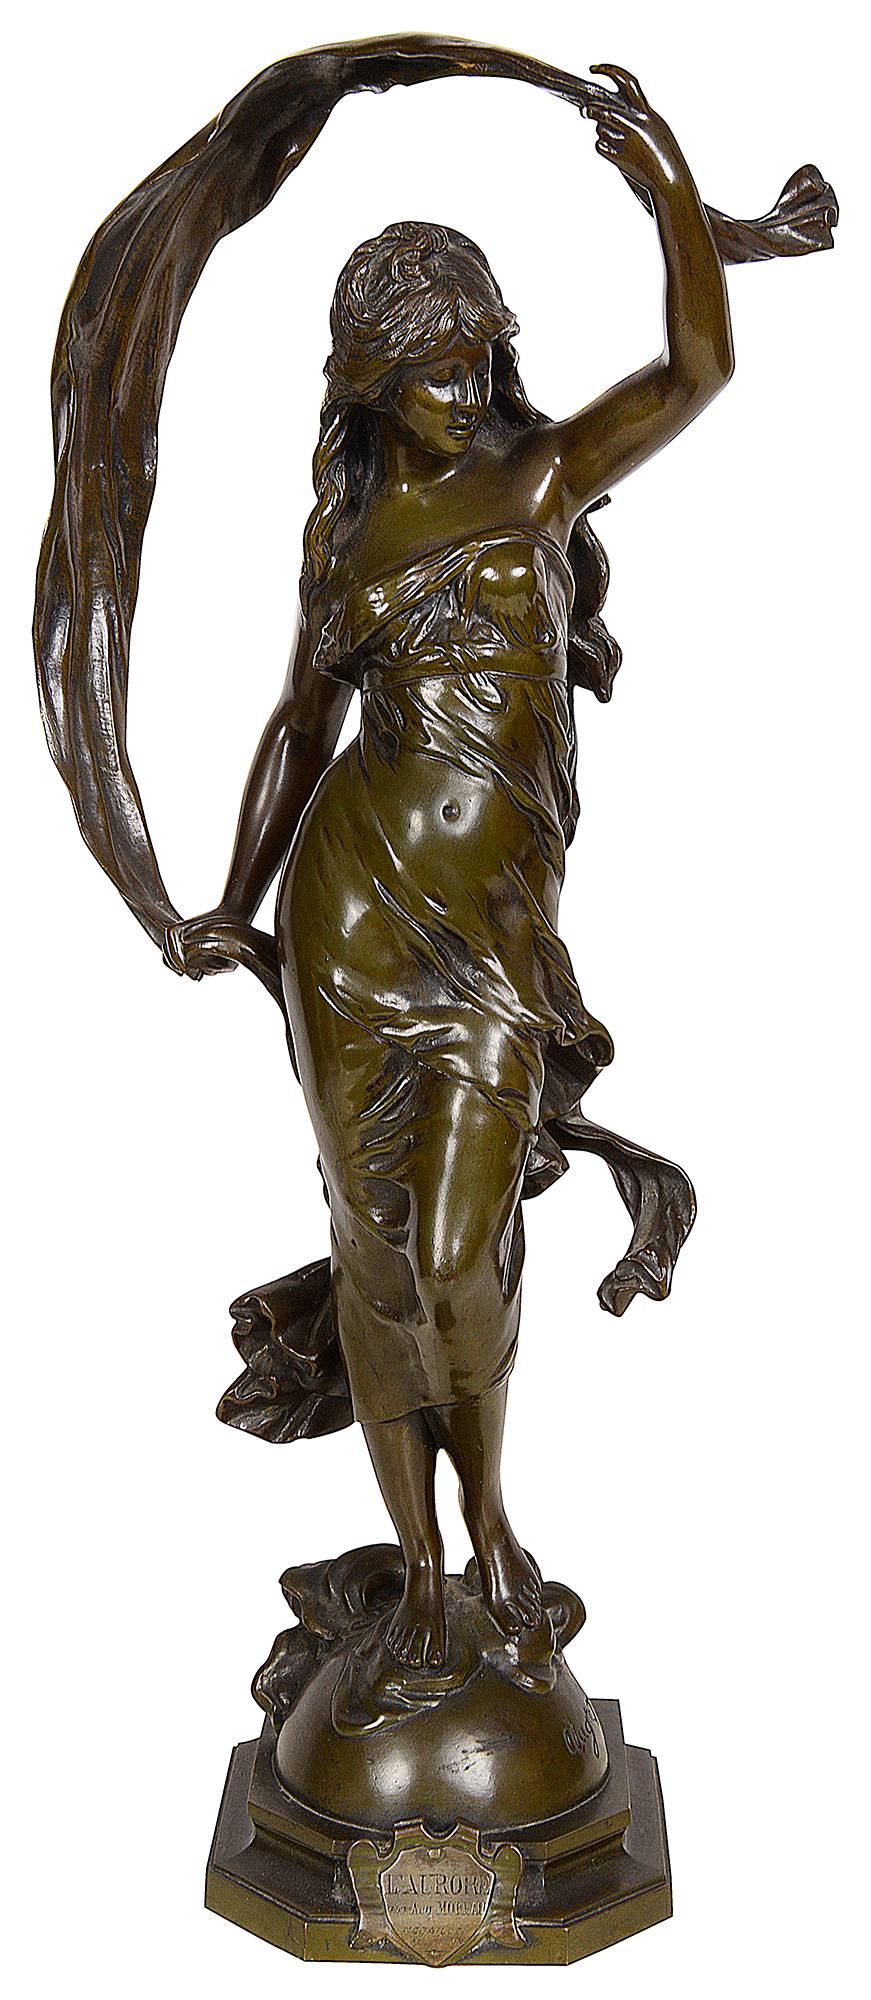 Statue d'Aurore en bronze patiné de très bonne qualité datant du 19e siècle, signée Aug. Moreau

Aurore, dans la mythologie gréco-romaine, personnification de l'aube. Selon la Théogonie du poète grec Hésiode, elle était la fille du Titan Hypérion